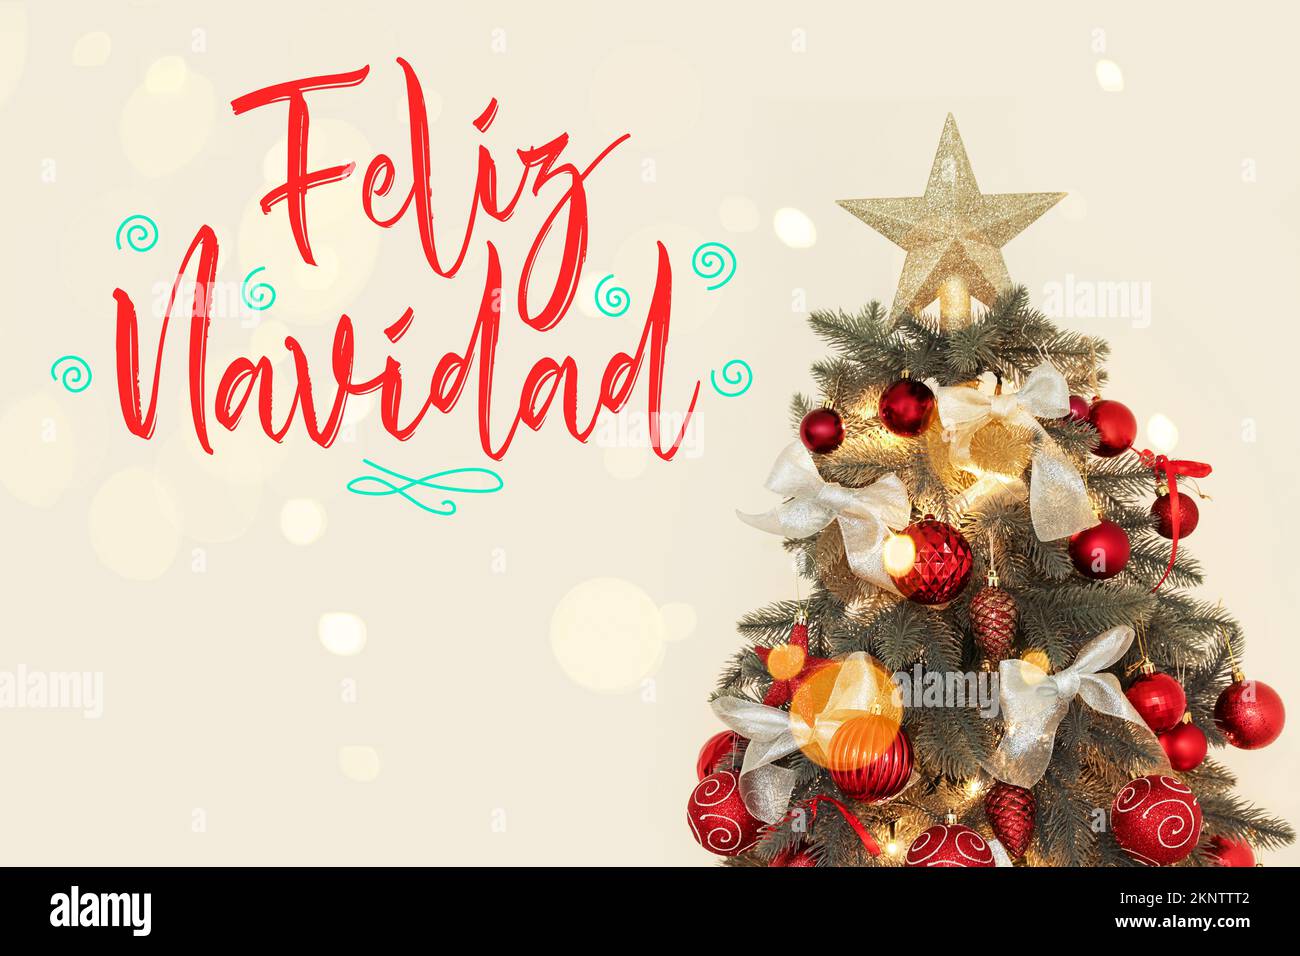 Grußkarte mit dekoriertem Tannenbaum und Text FELIZ NAVIDAD (Spanisch für fröhliche Weihnachten) Stockfoto